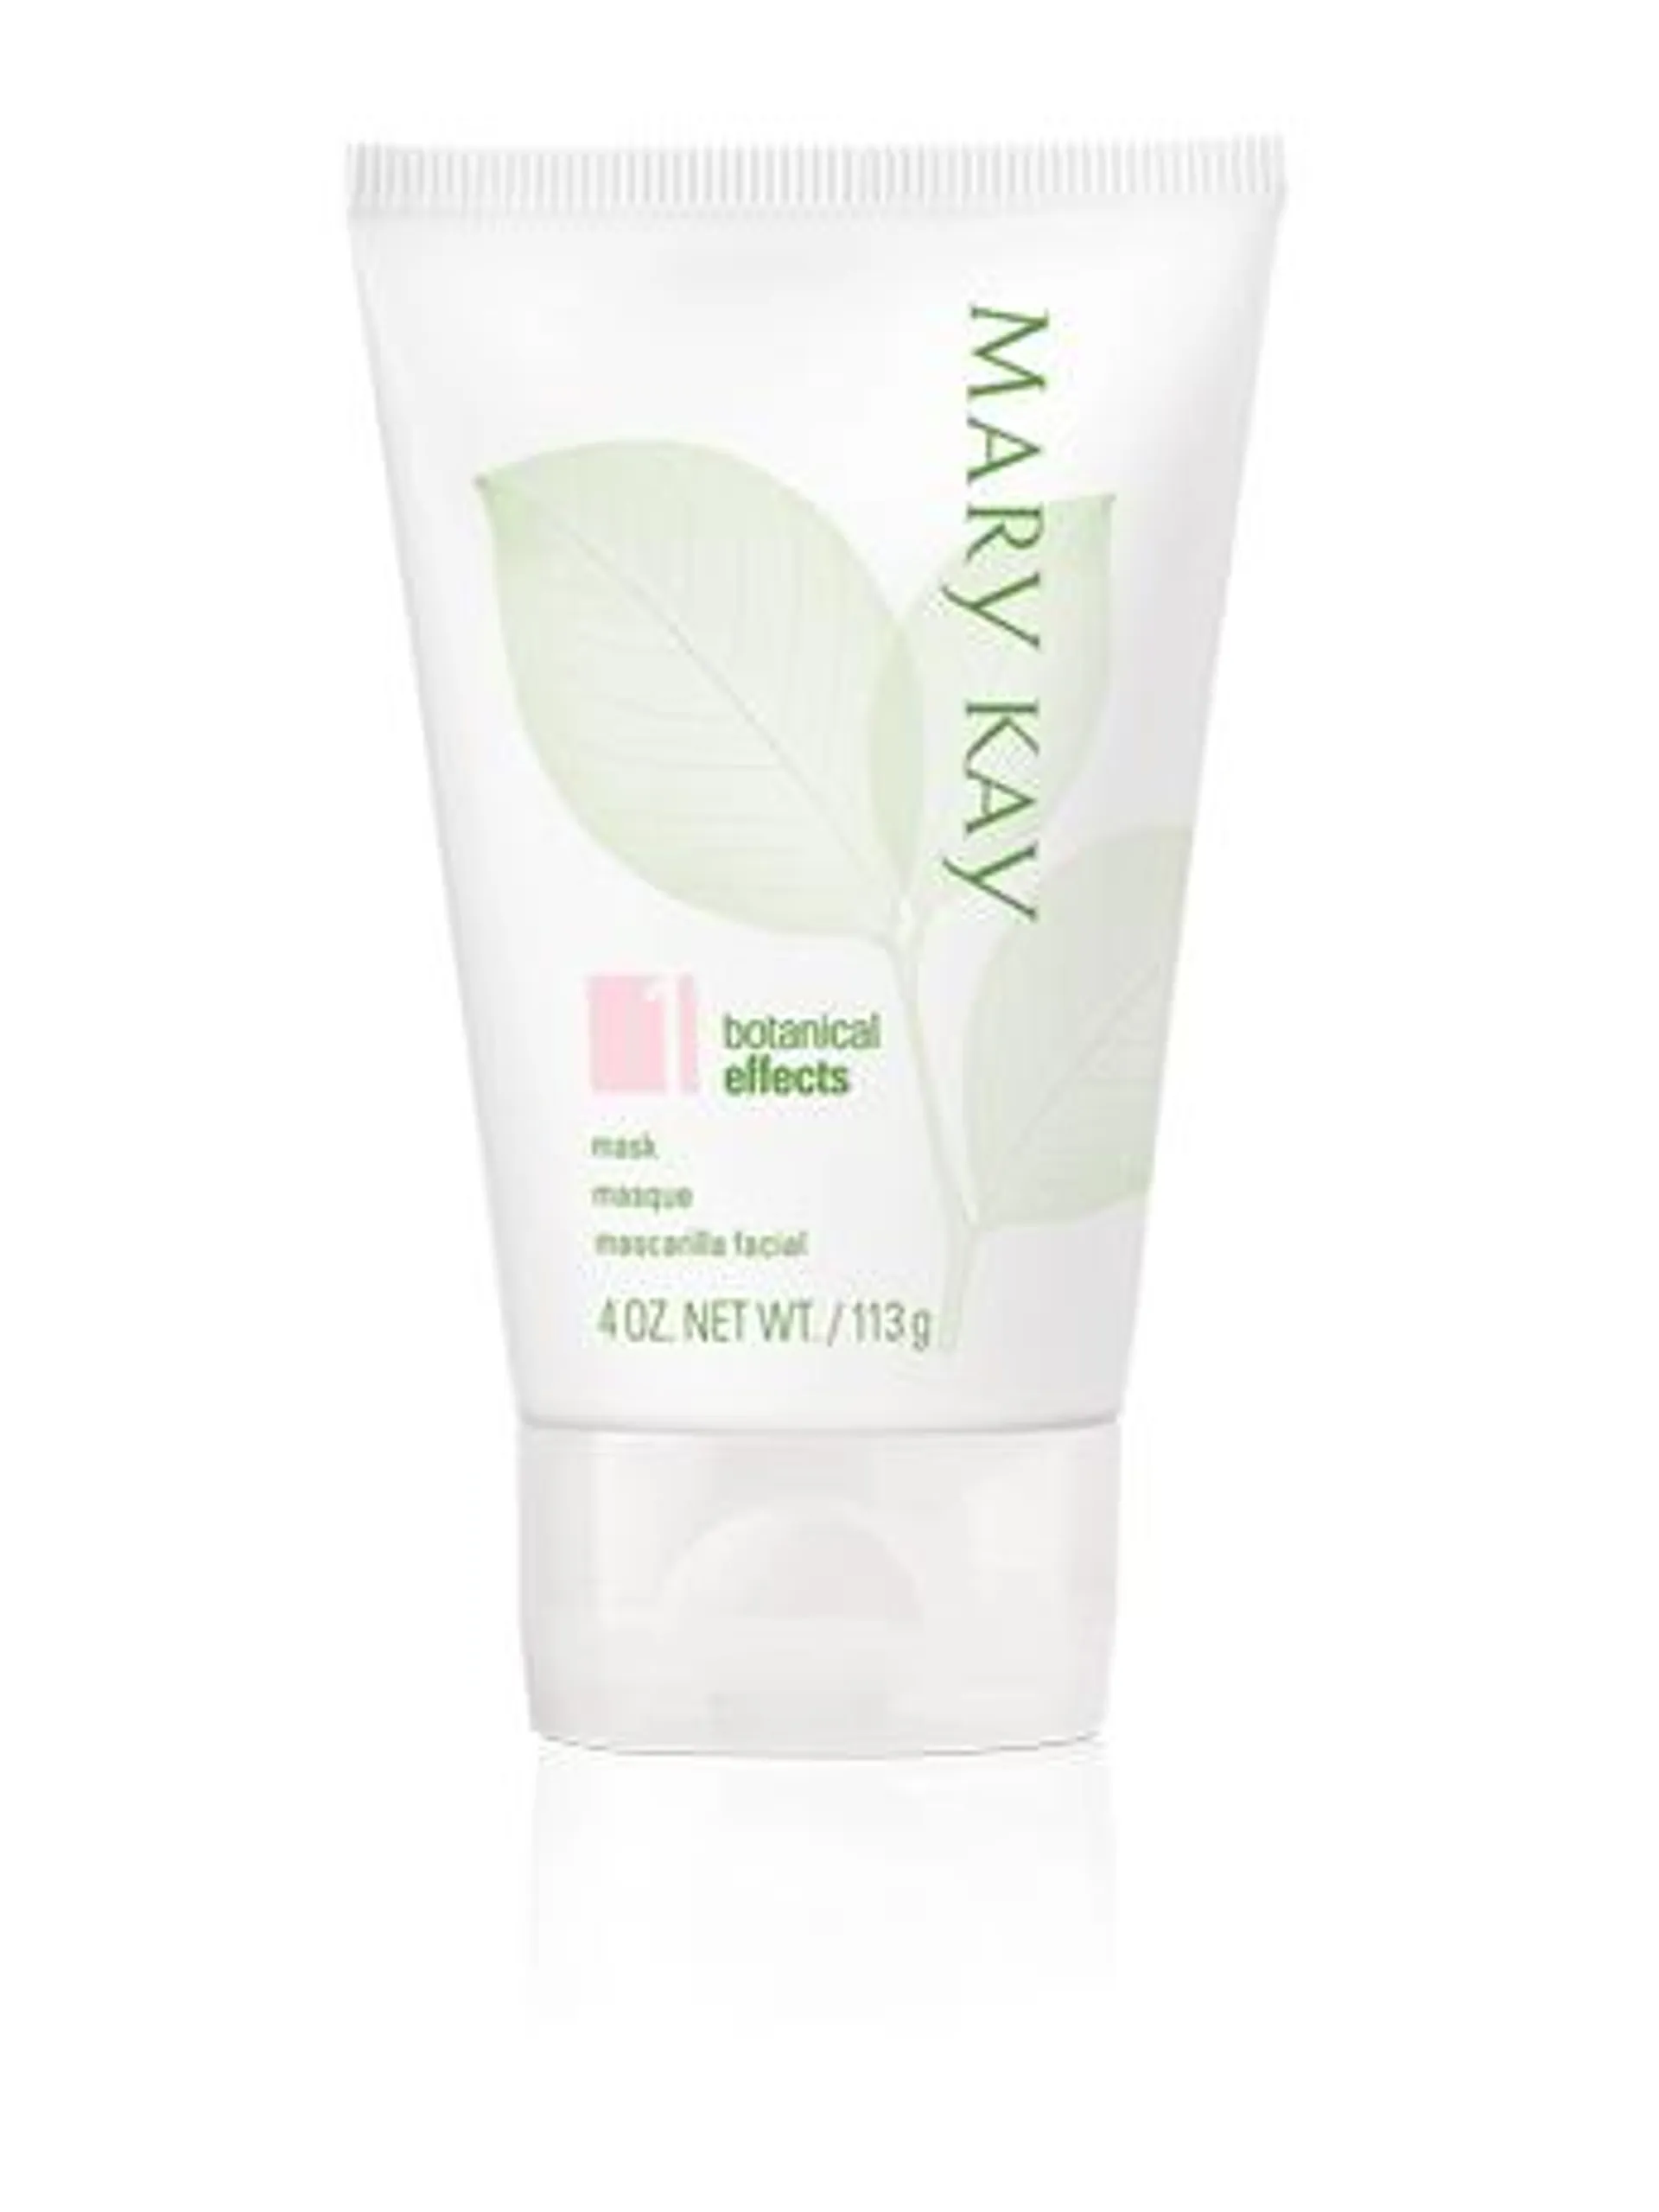 Botanical Effects® Mask Formula 1 (Dry Skin)